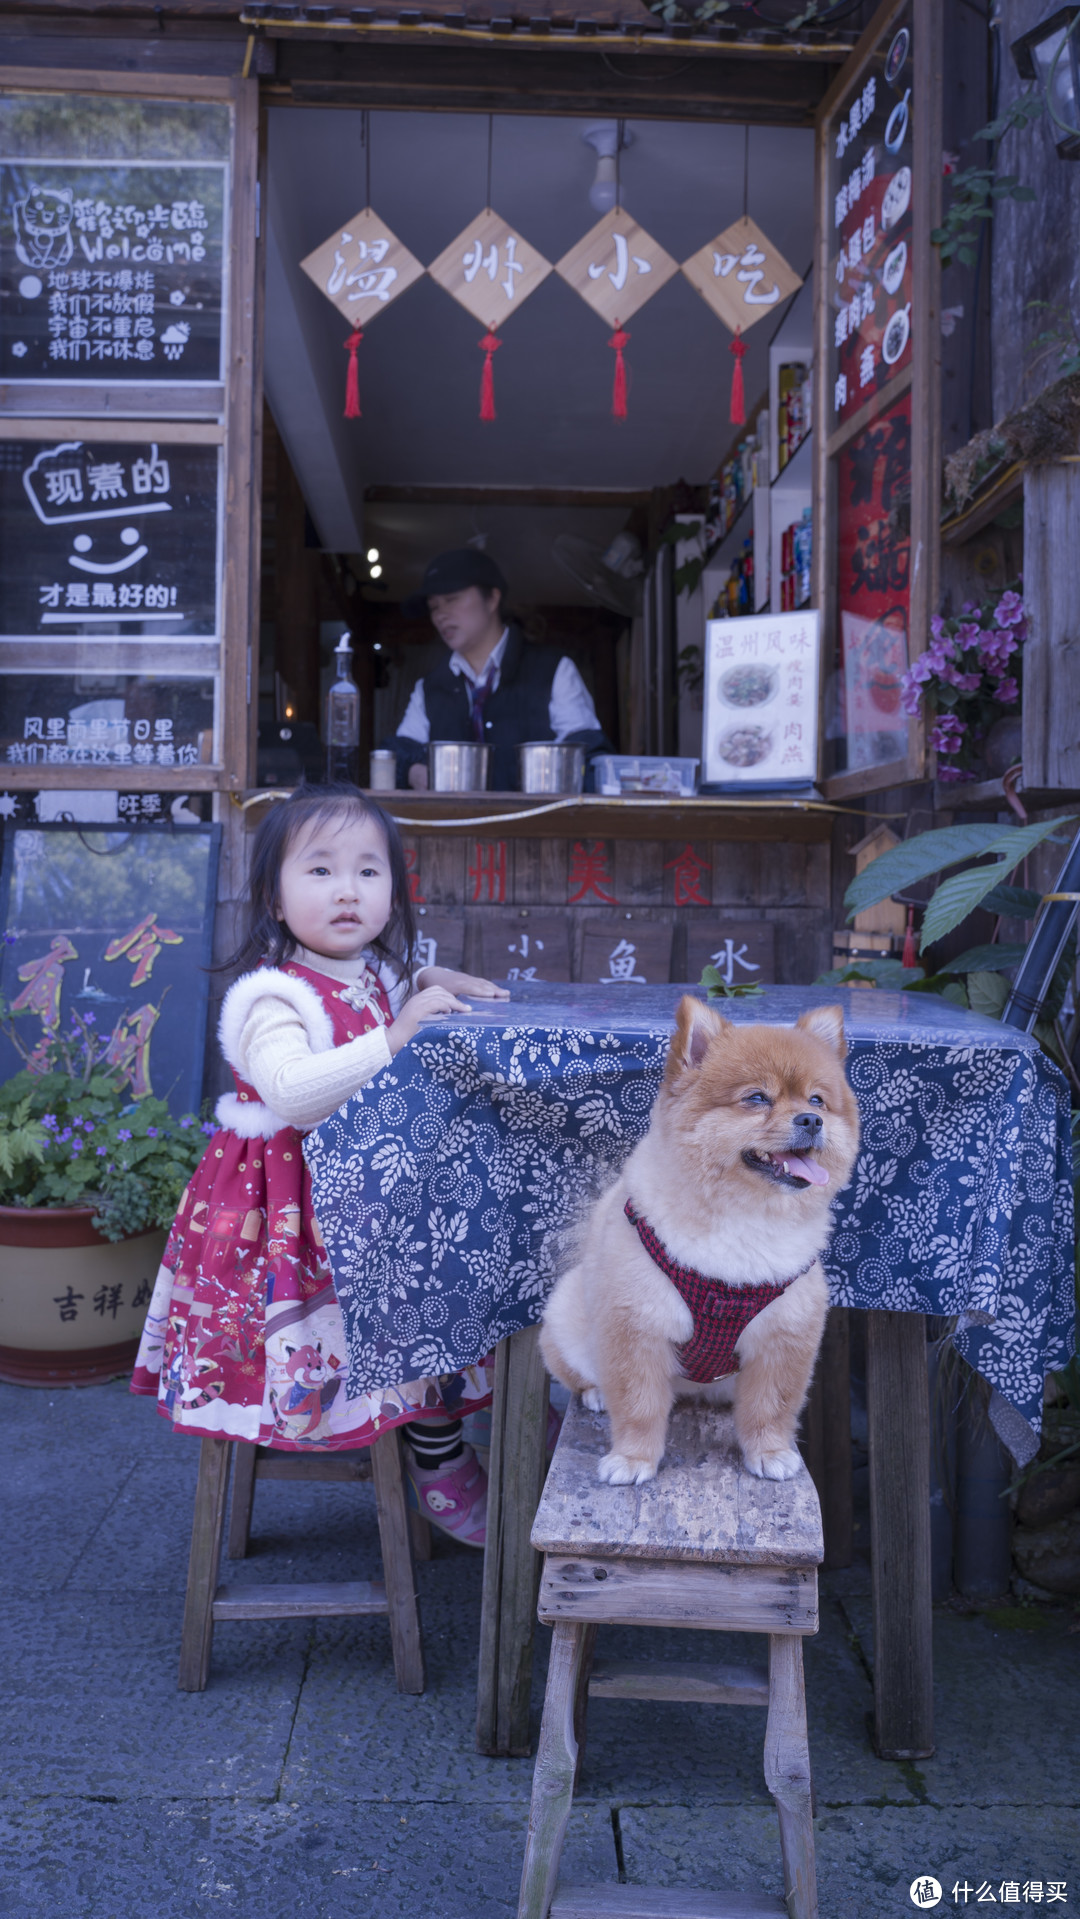 这条街道的温州小吃店，这条街上还有很多卖青瓷宝剑的，毕竟离龙泉还是比较近的。